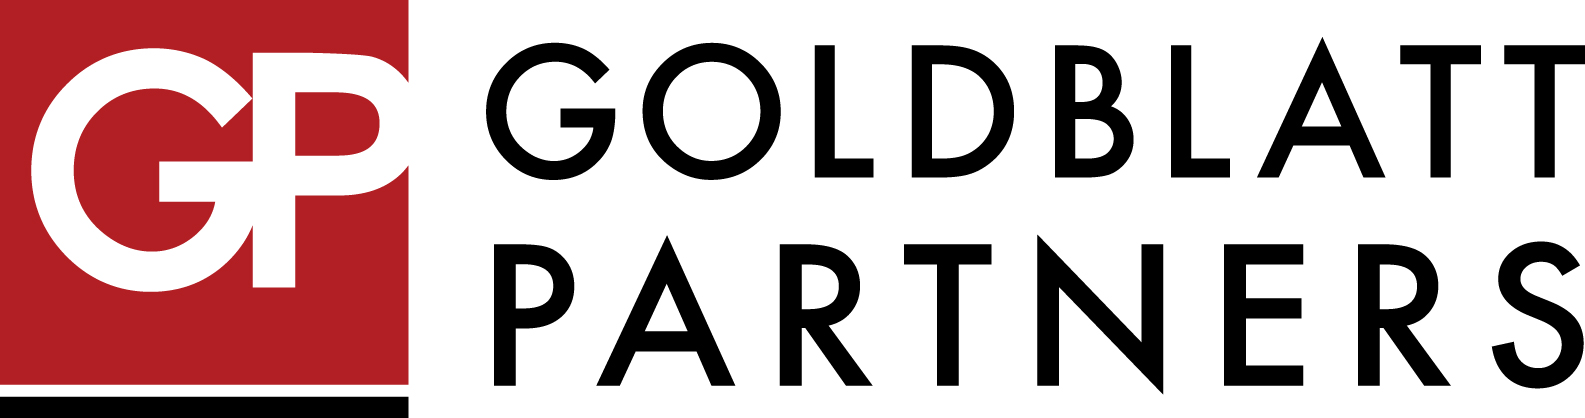 Goldblatt Partners Logo